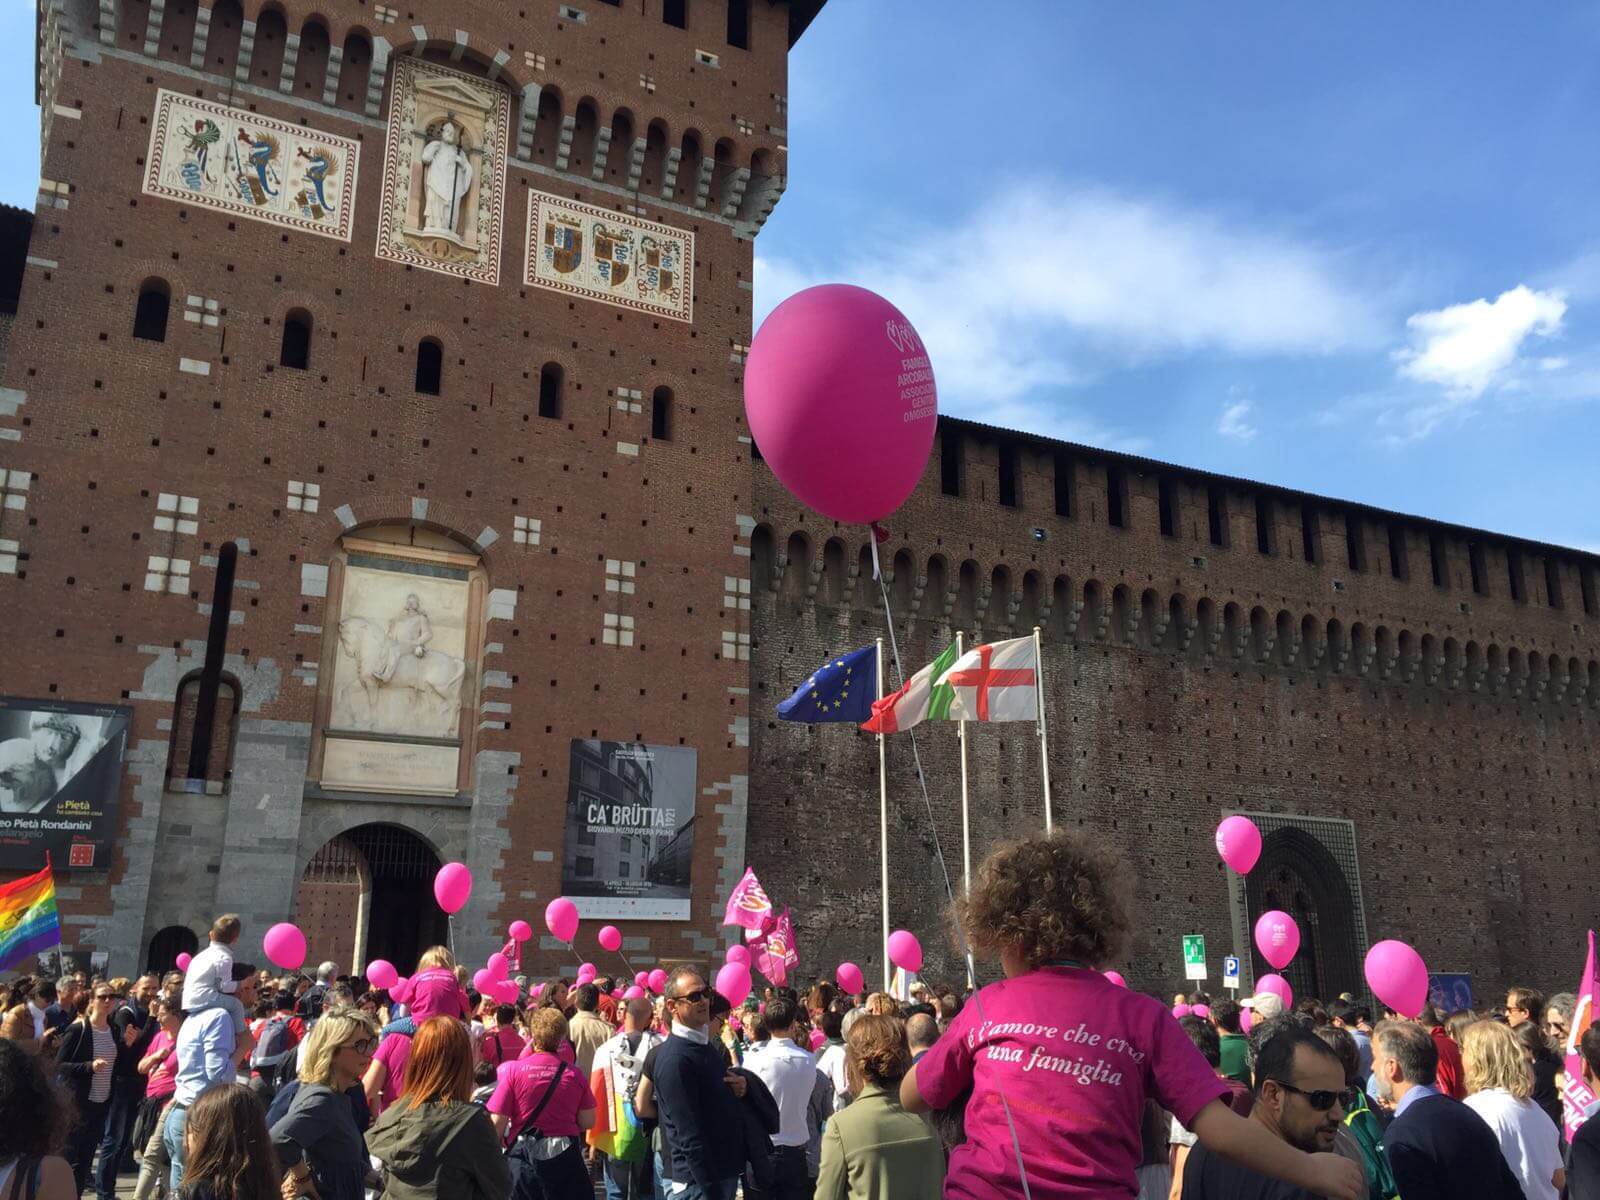 Festa delle Famiglie Arcobaleno a Milano: ecco foto e video!